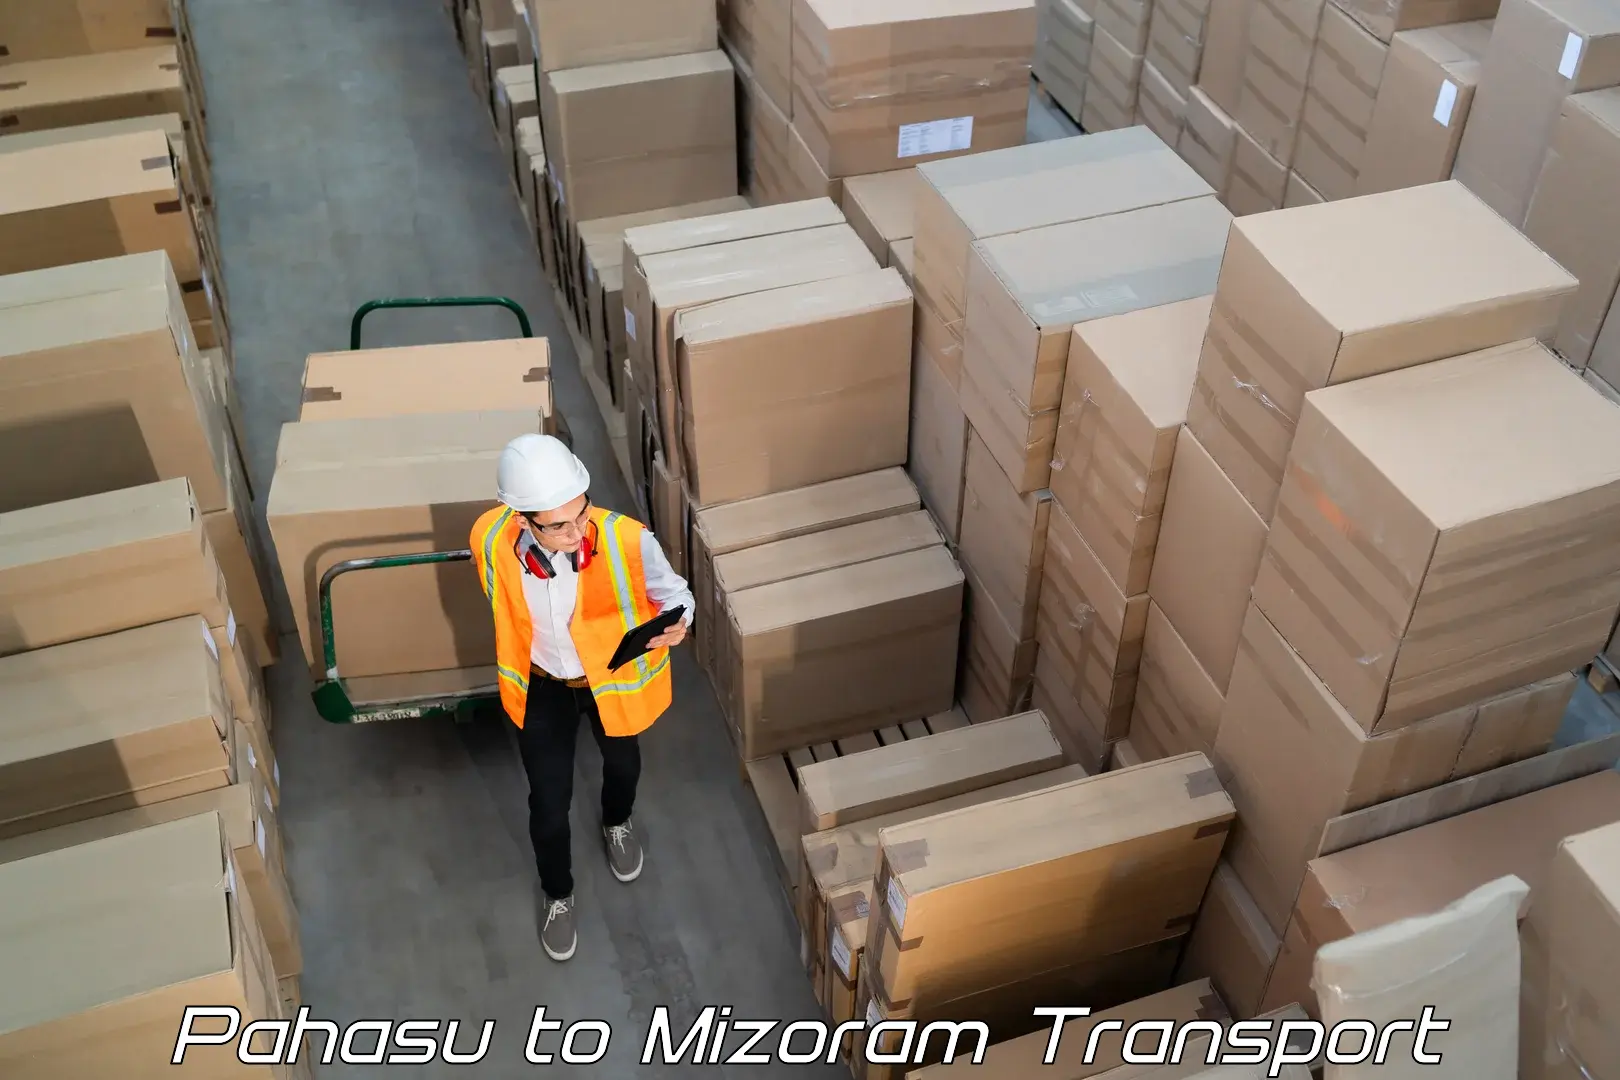 Daily parcel service transport Pahasu to Mizoram